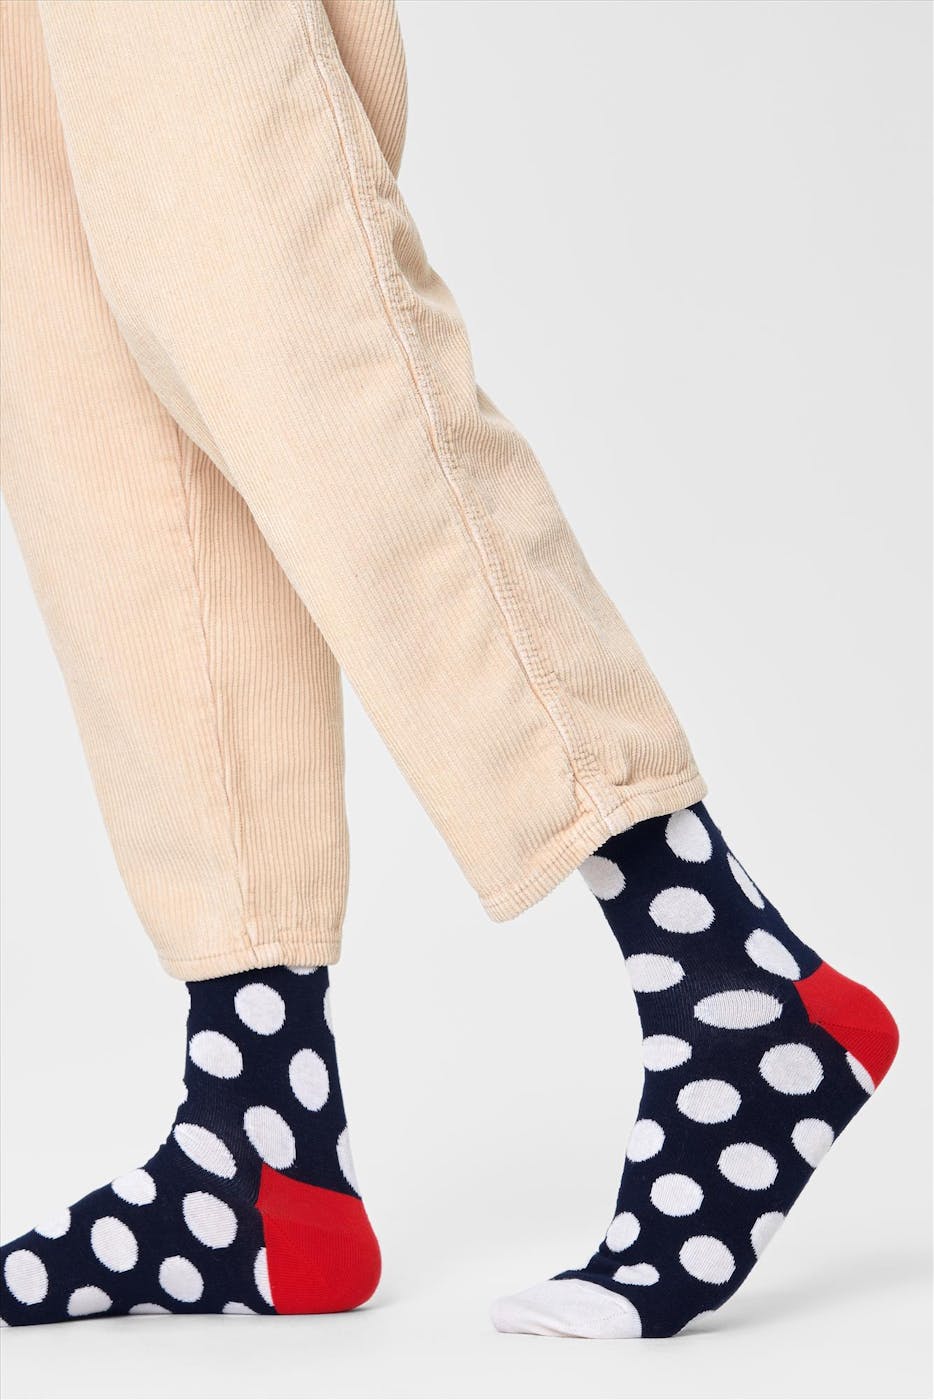 Happy Socks - Zwart-wit-rode Big Dot Crew sokken, maat: 41-46